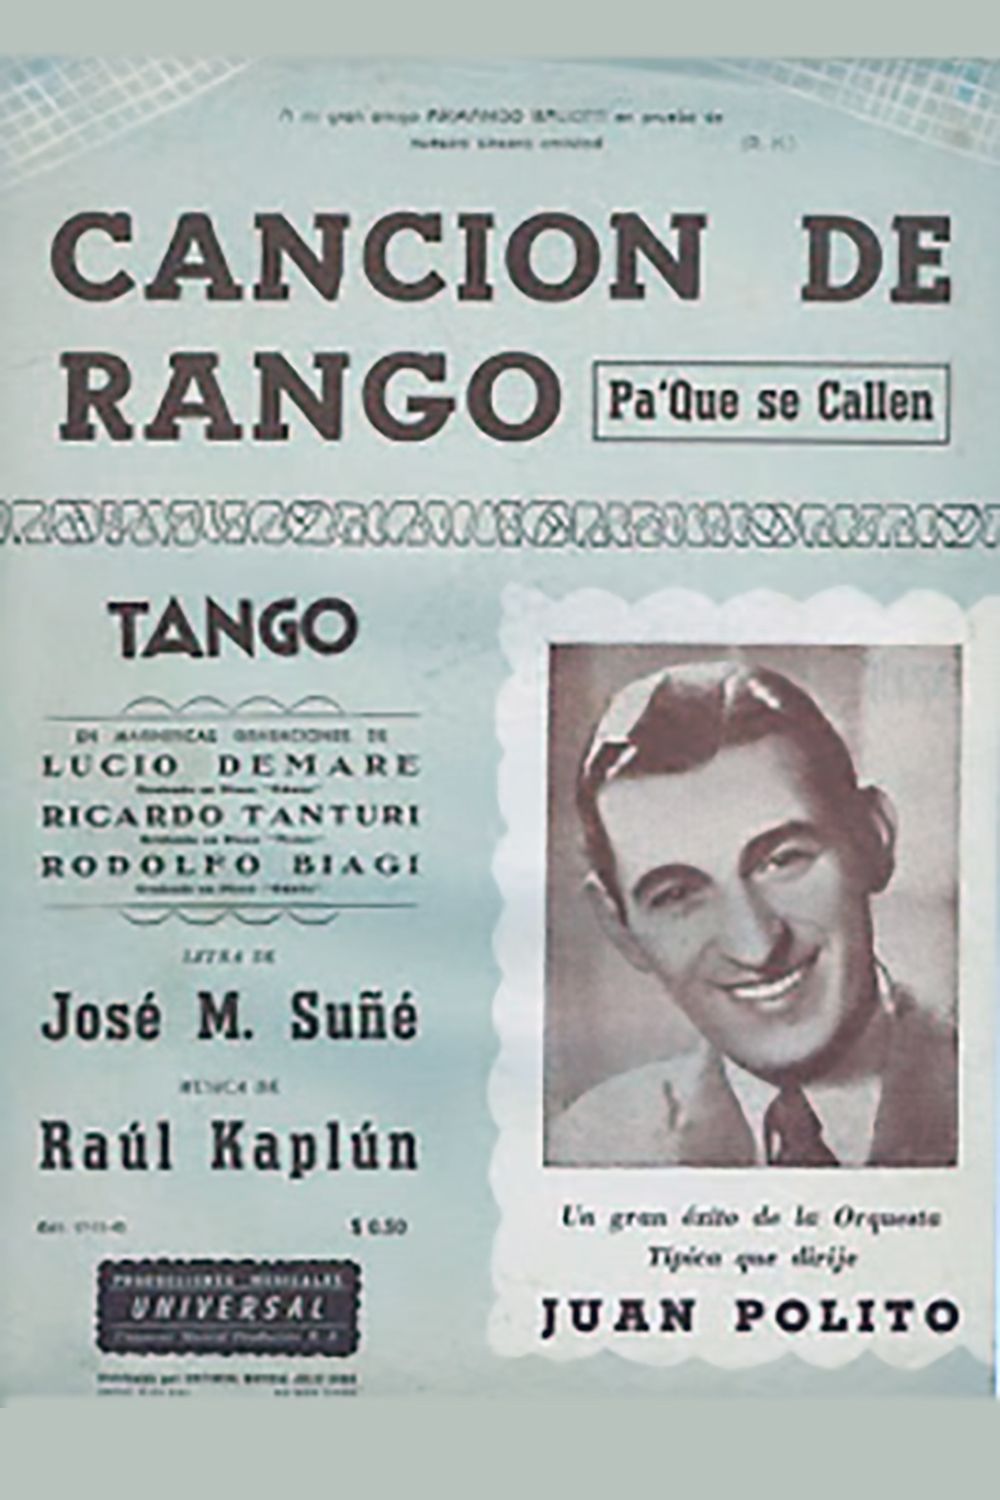 "Canción de rango (Pa' que se callen)", partitura musical del tango.